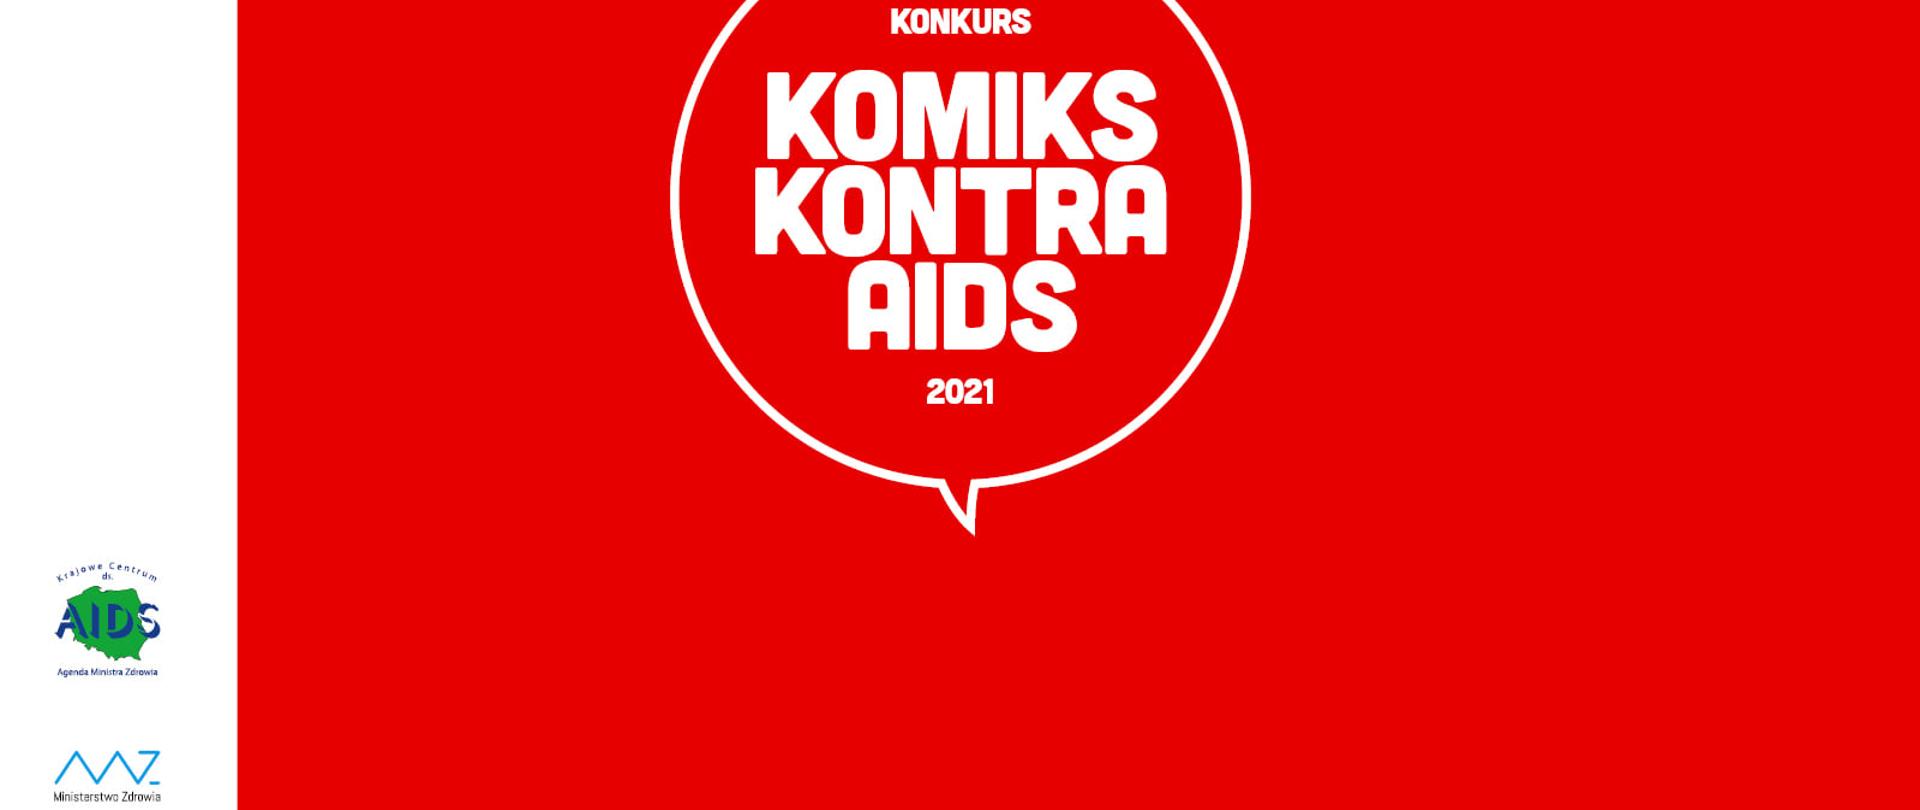 Biały napis na czerwonym tle: Konkurs Komiks kontra AIDS 2021. Z lewej strony na białym tle logo Ministerstwa Zdrowia i Krajowego Centrum ds. AIDS